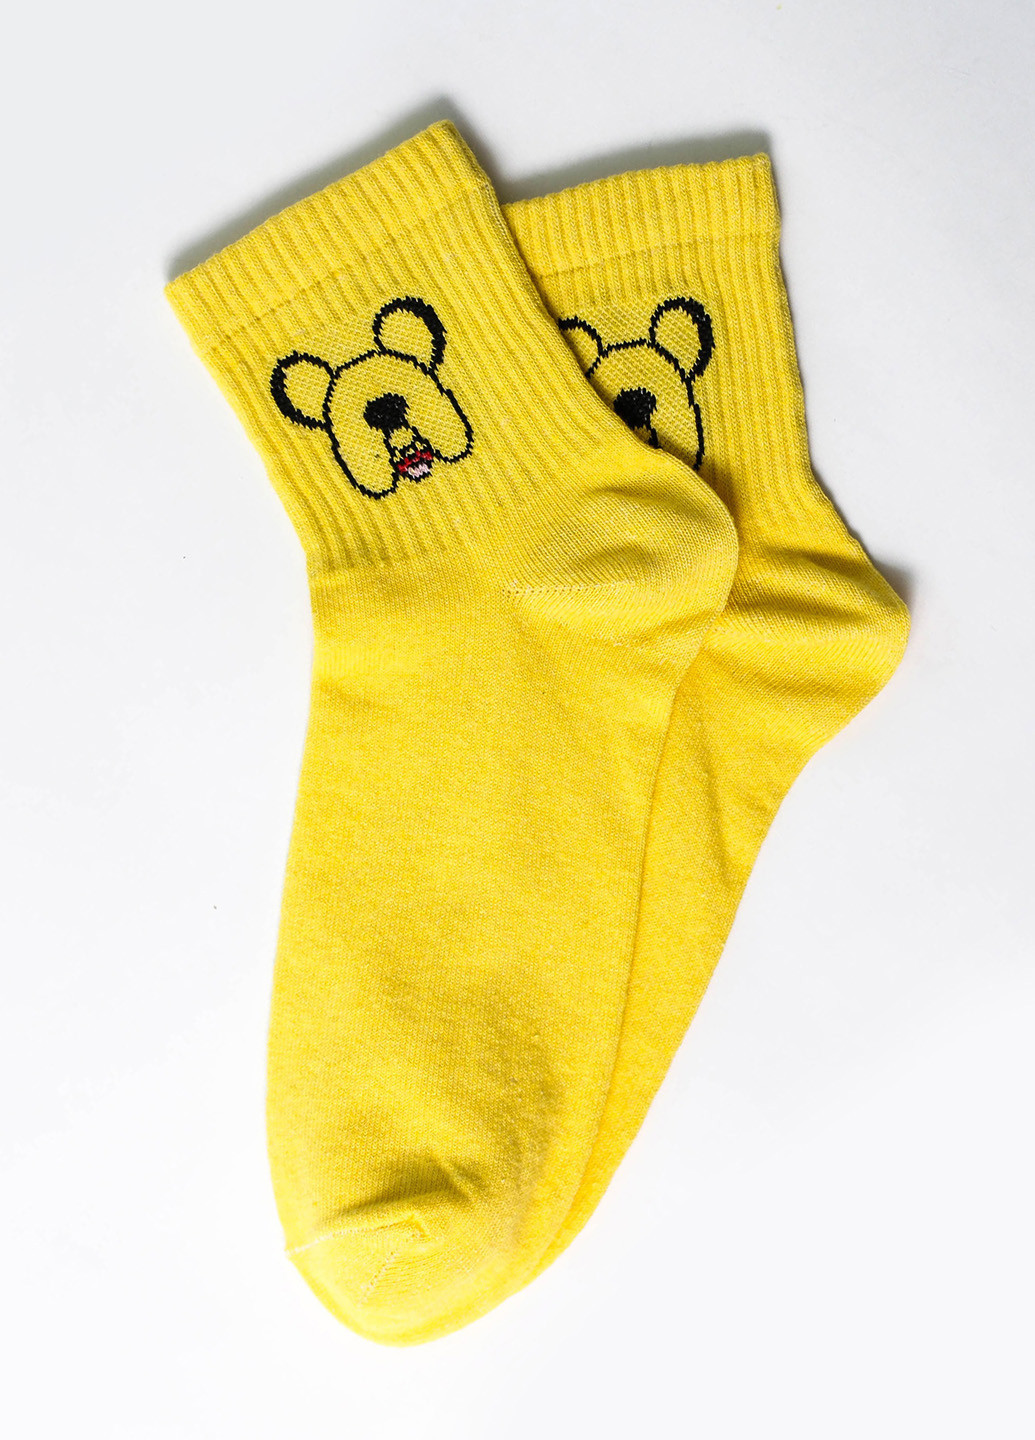 Шкарпетки Час пригод. Джейк жовті Rock'n'socks жовті повсякденні